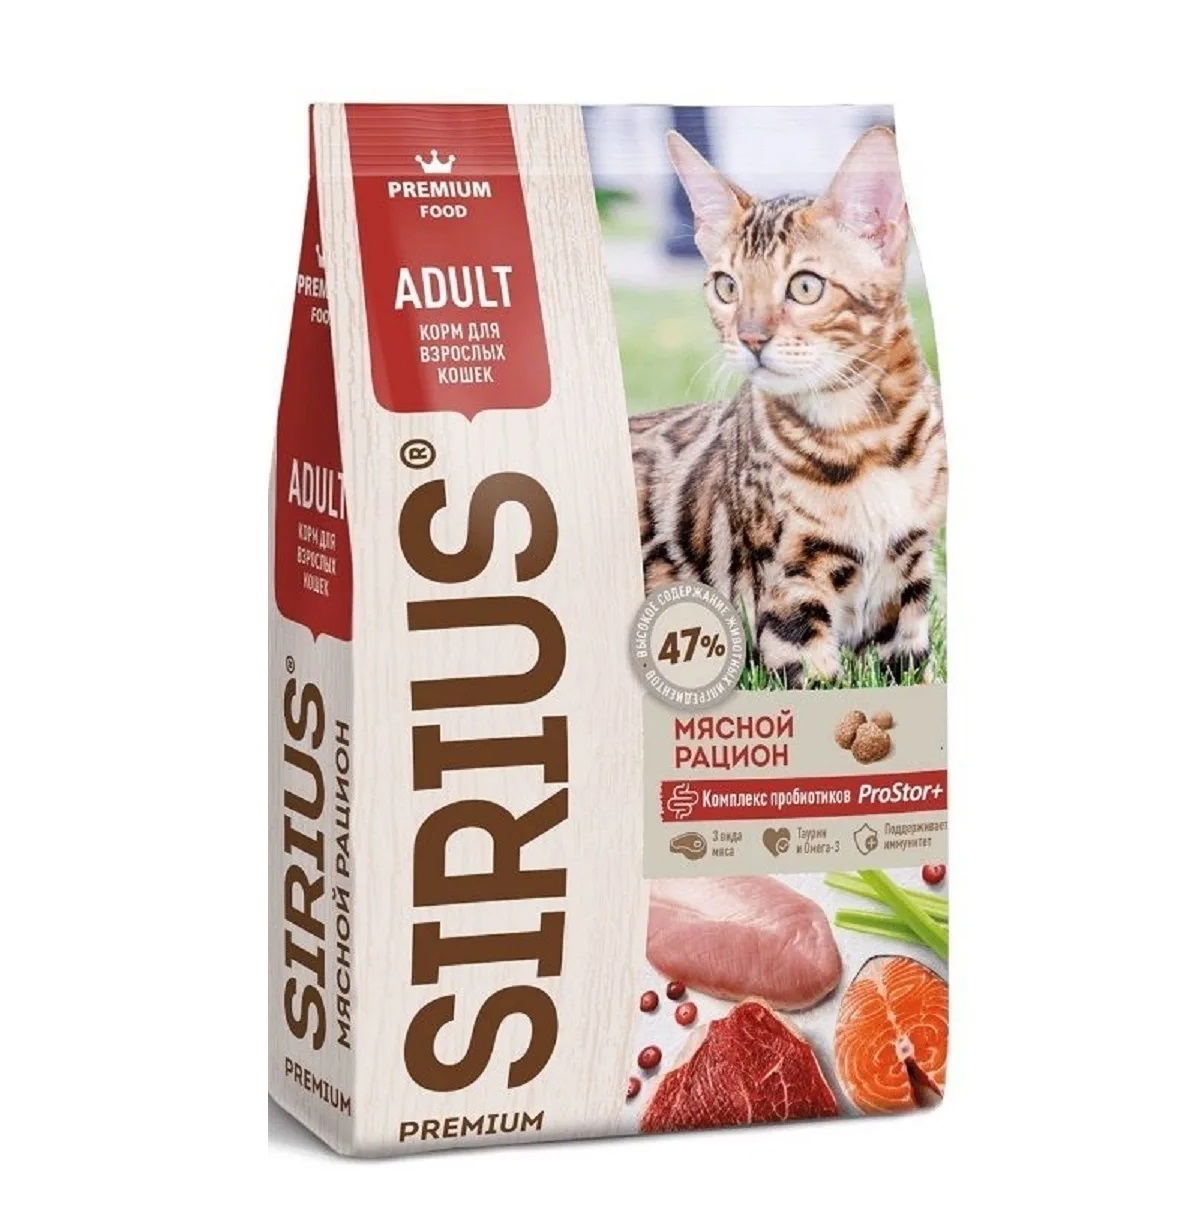 Сириус 1,5кг - для кошек Мясной рацион (Sirius) + Подарок